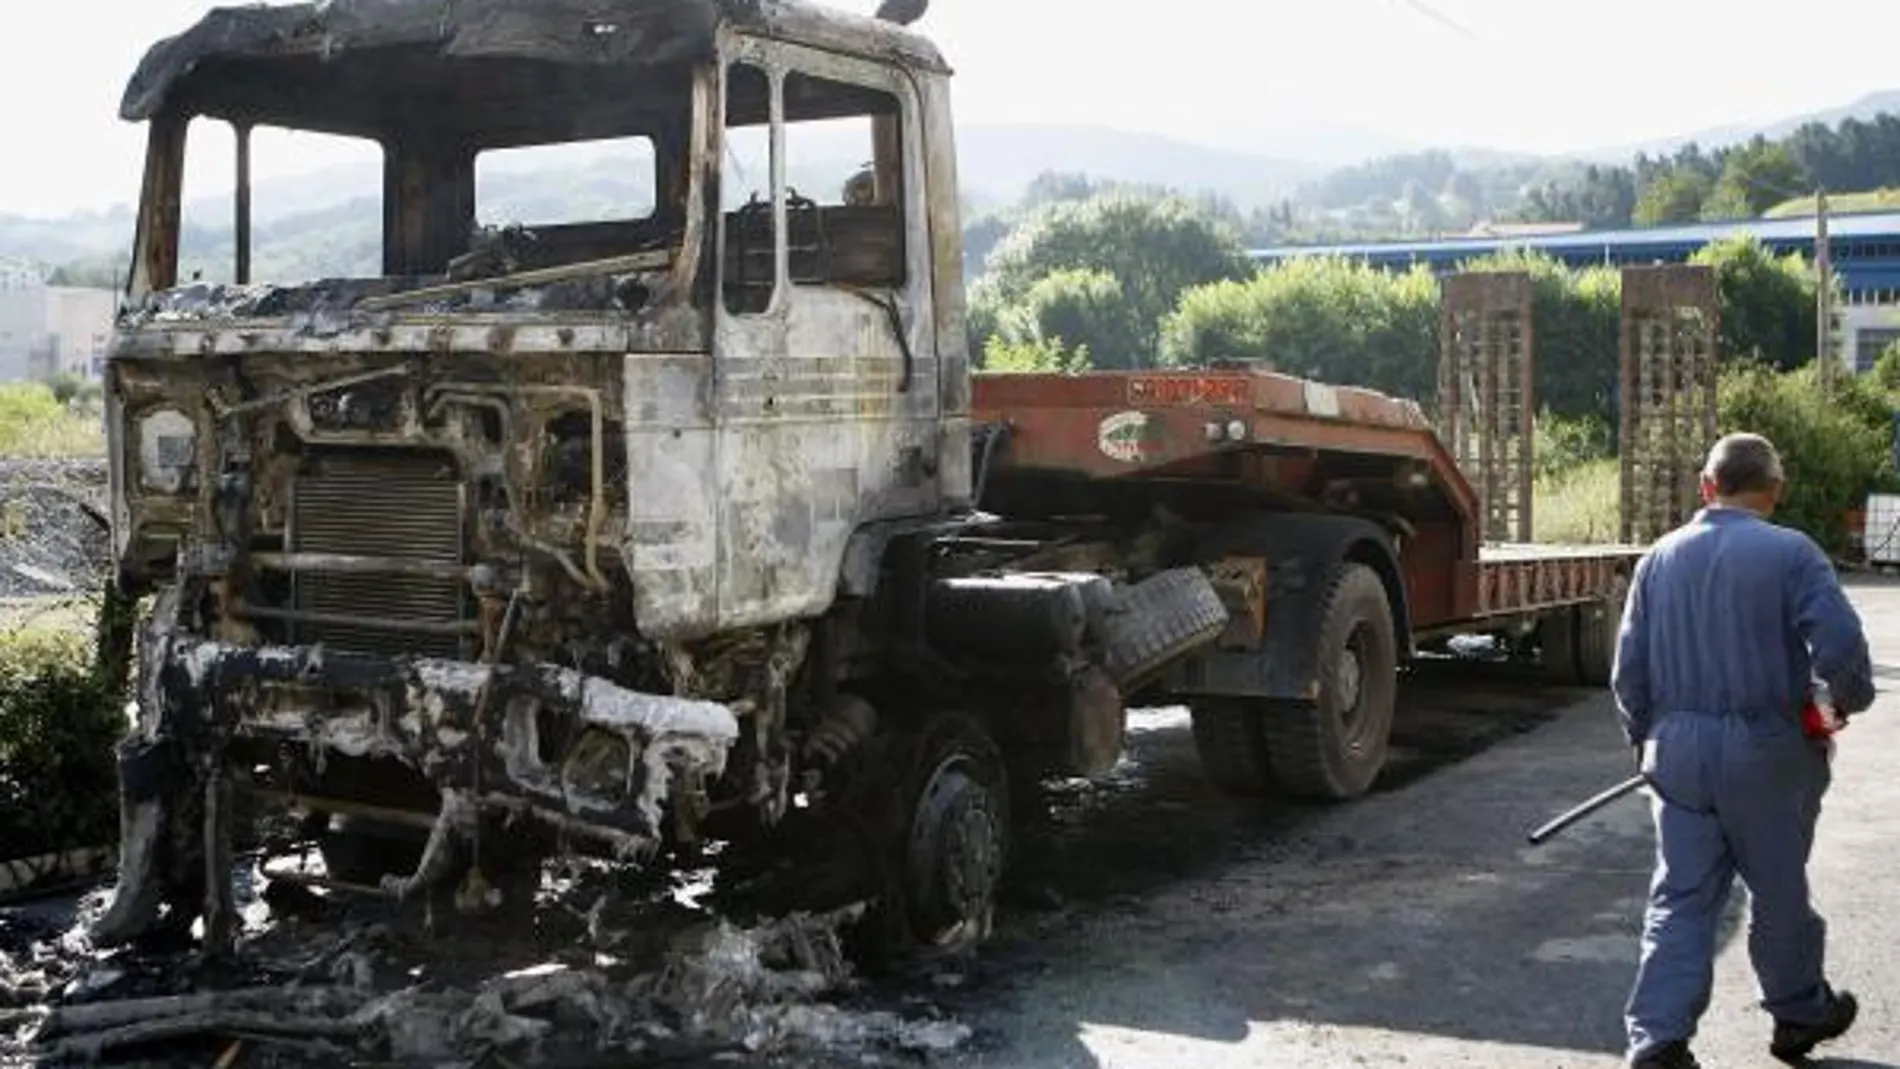 Uno de los camiones quemados en la localidad de Andoain el pasado lunes